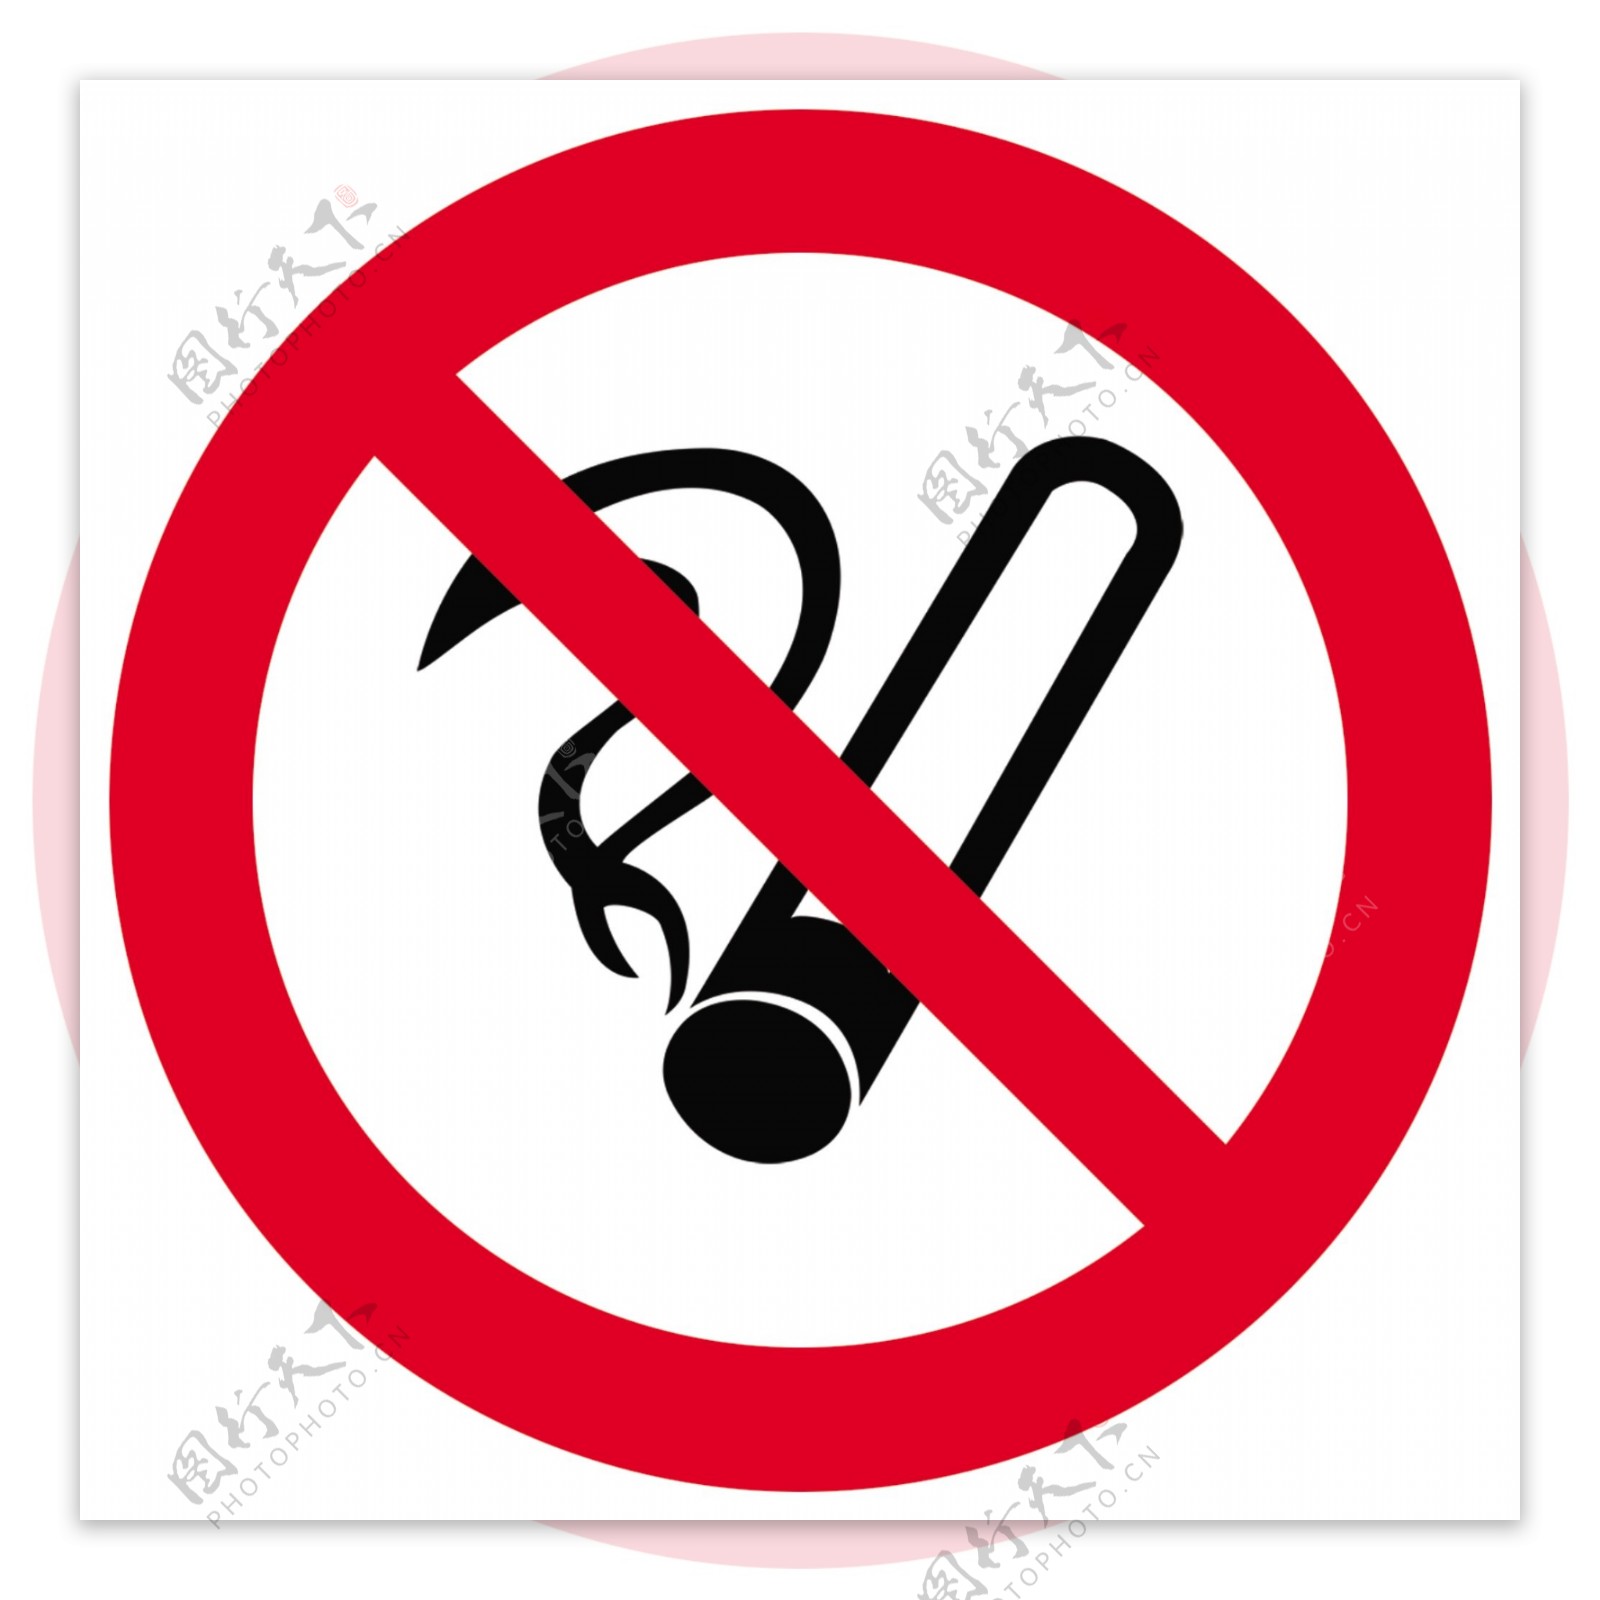 禁止吸烟图片素材免费下载 - 觅知网